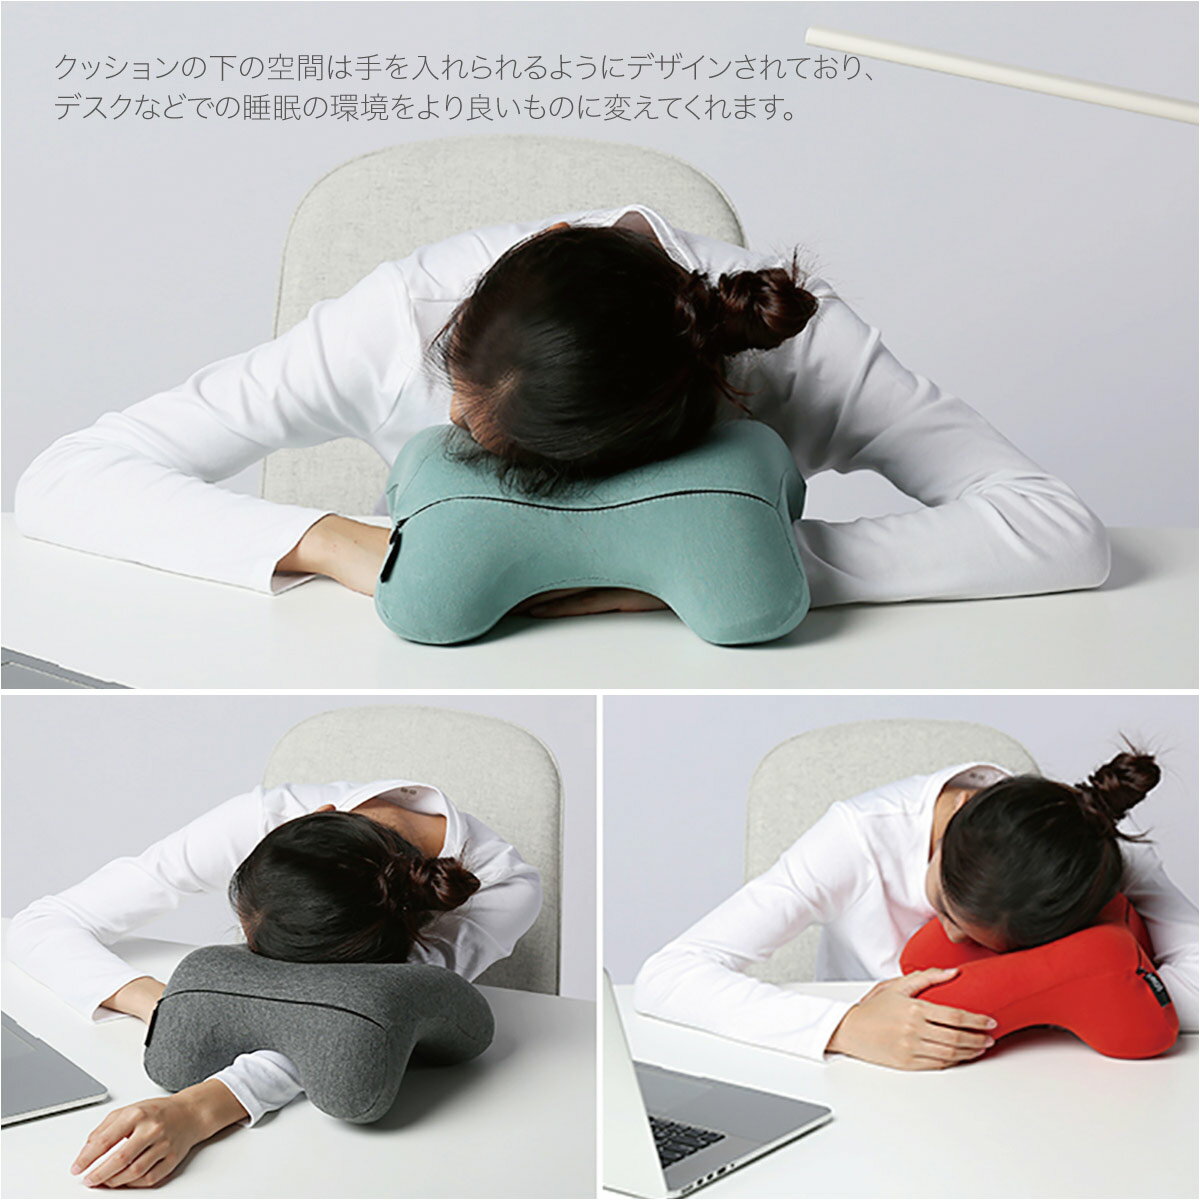 ネックピローとして使う時は、頭を乗せて背もたれとの間に挟むようにして使います。その他にもお昼寝枕として、うつ伏せや横向きでも快適に使うことができますよ。